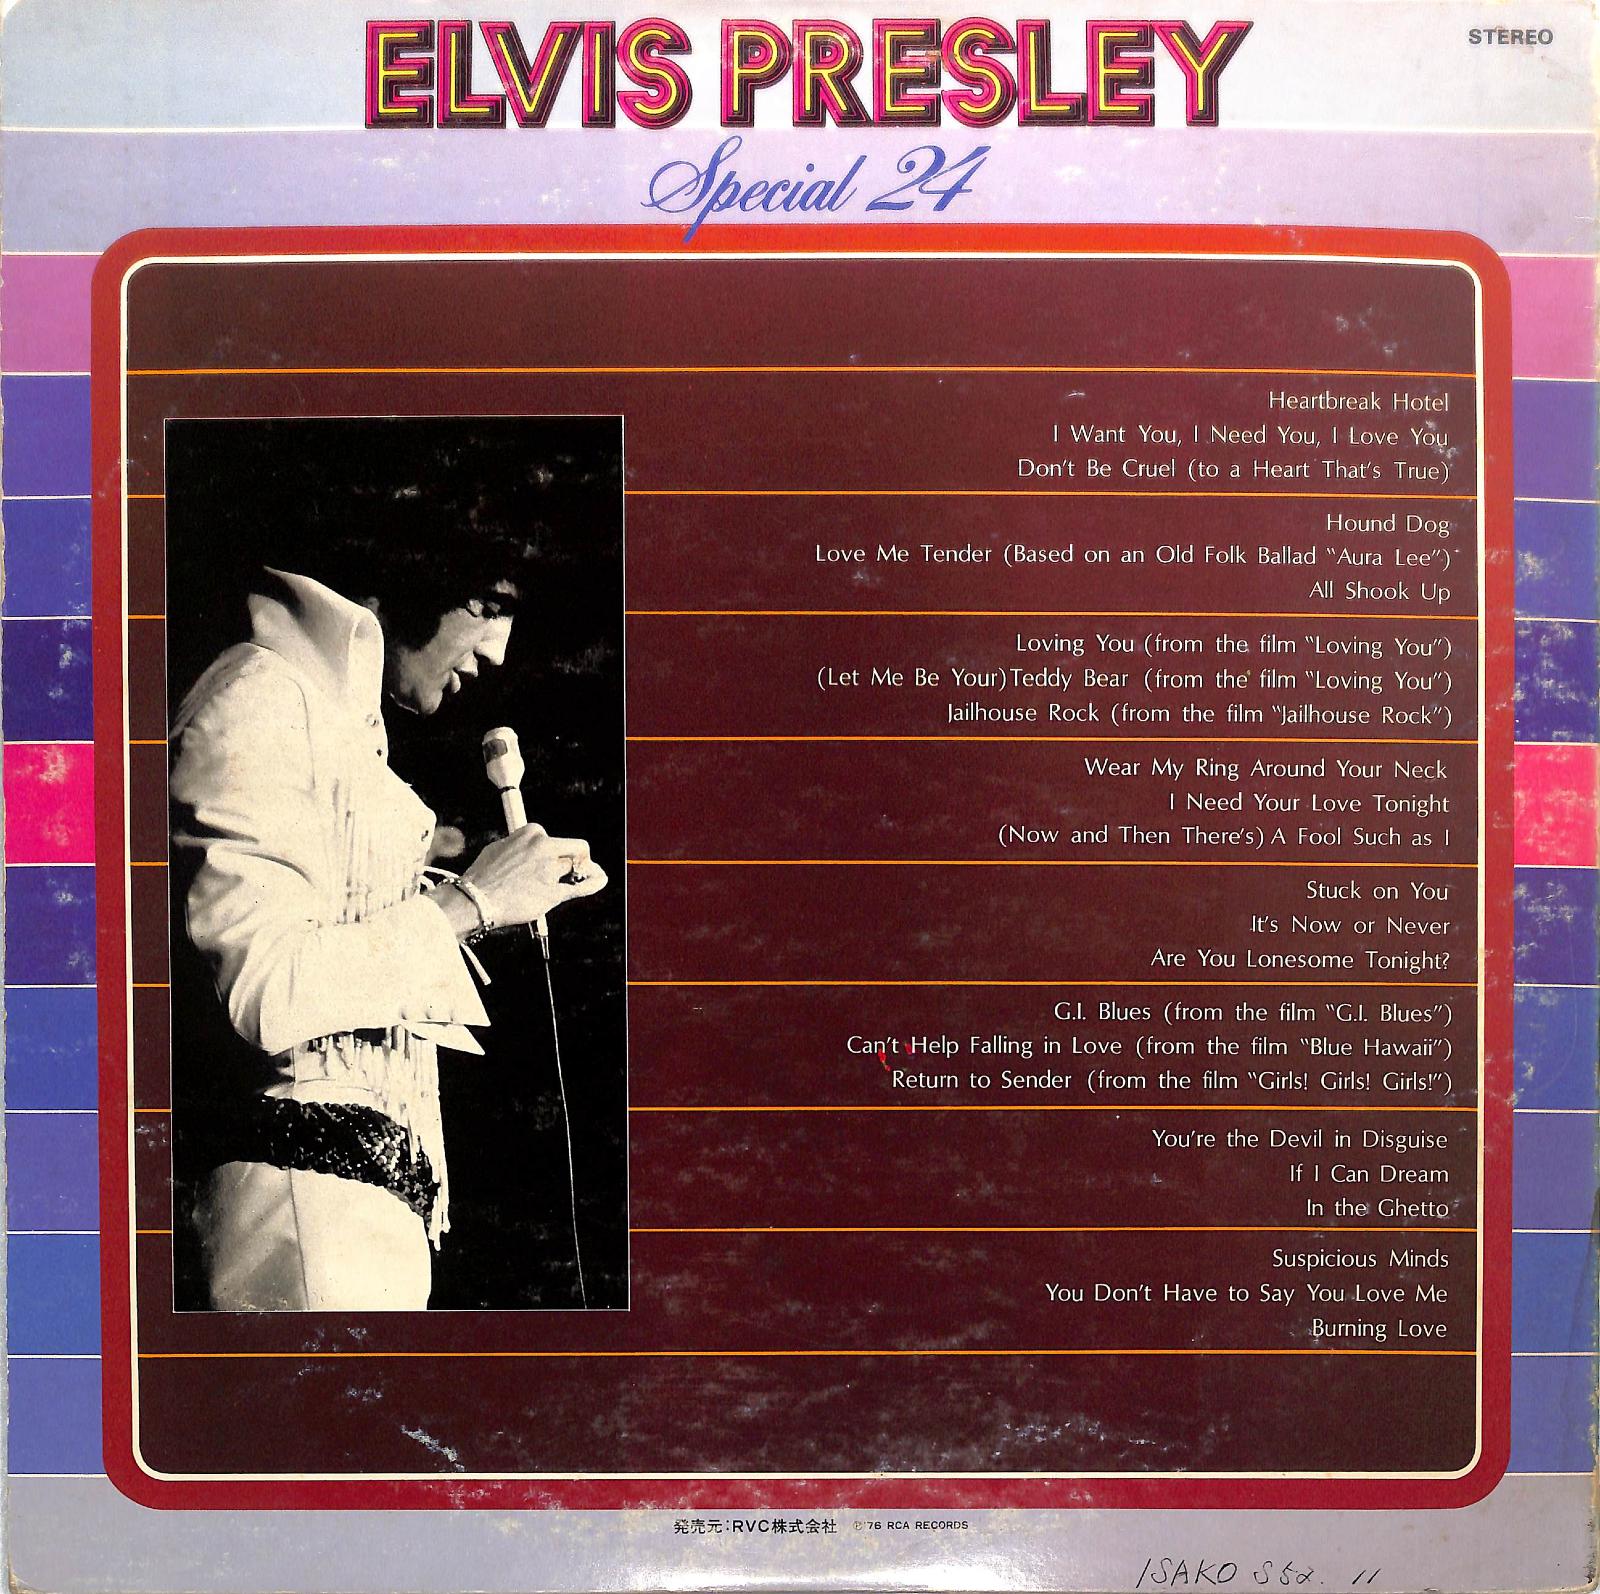 ELVIS PRESLEY - Special 24